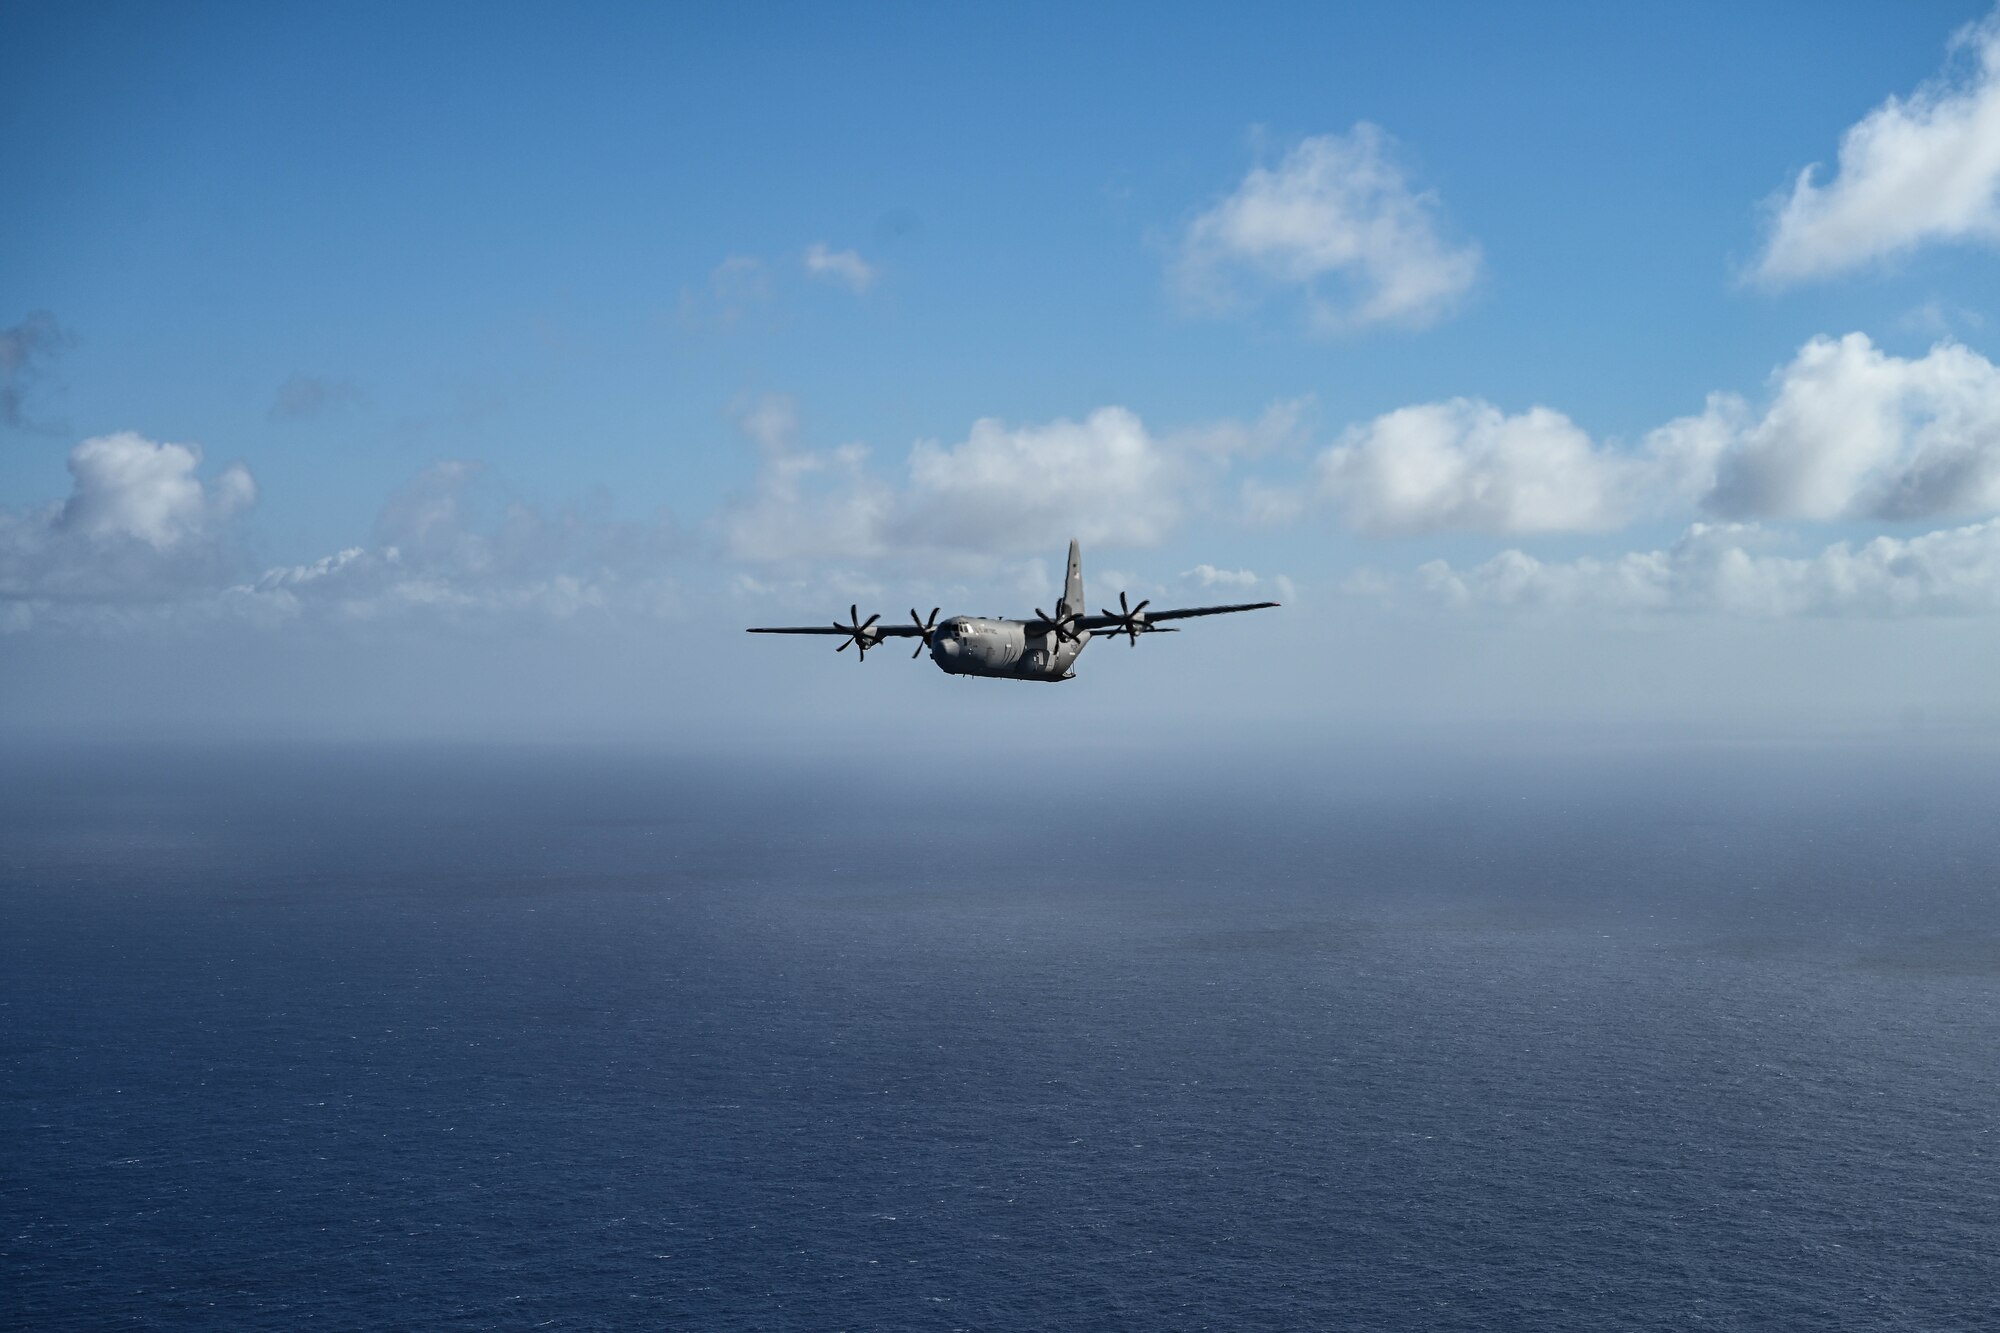 A military aircraft flies over an ocean